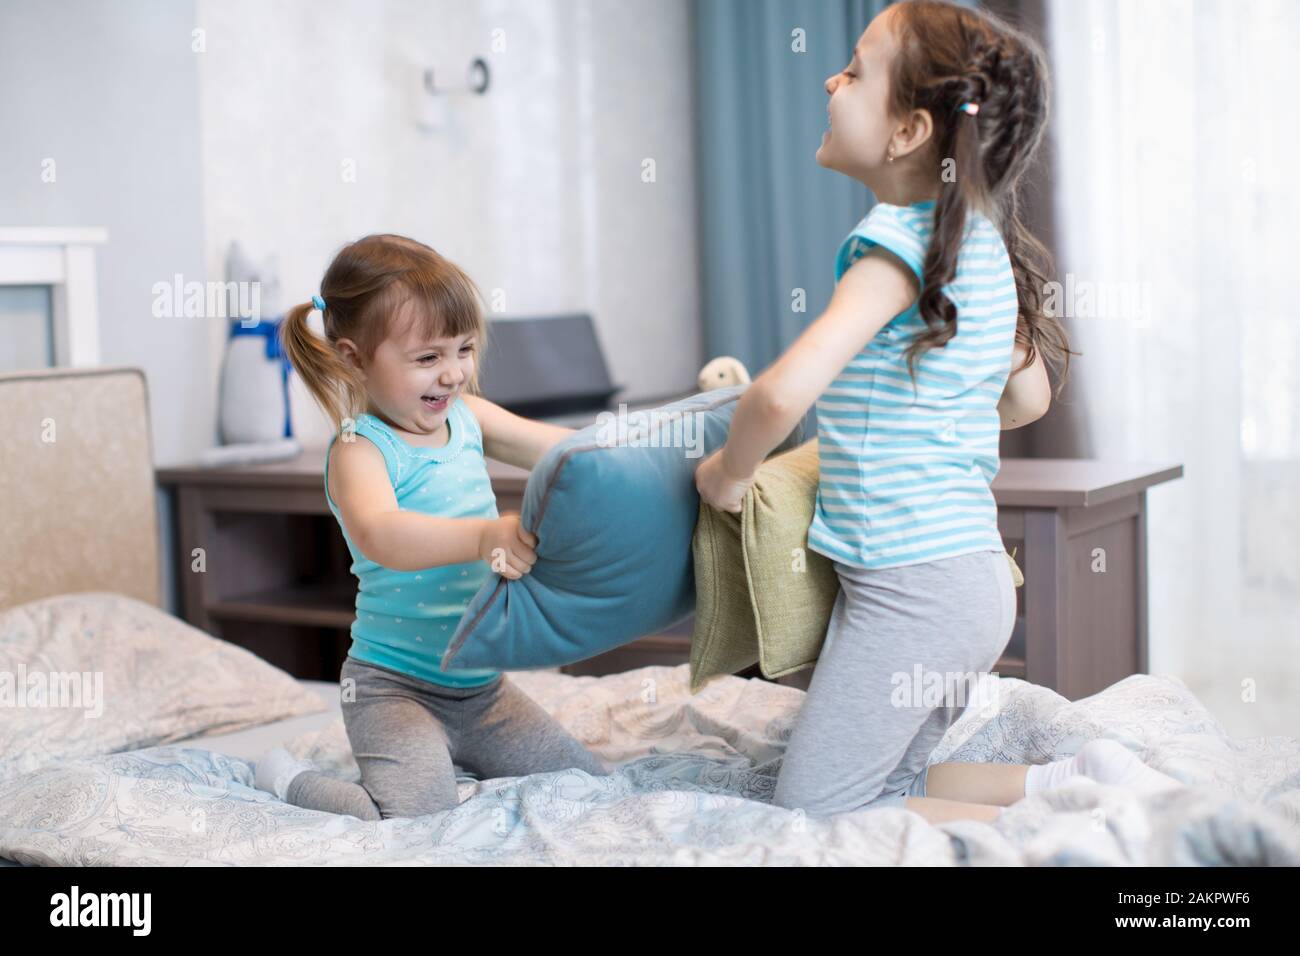 Los niños hermanas divertirse jugando con almohadas en la habitación en casa Foto de stock